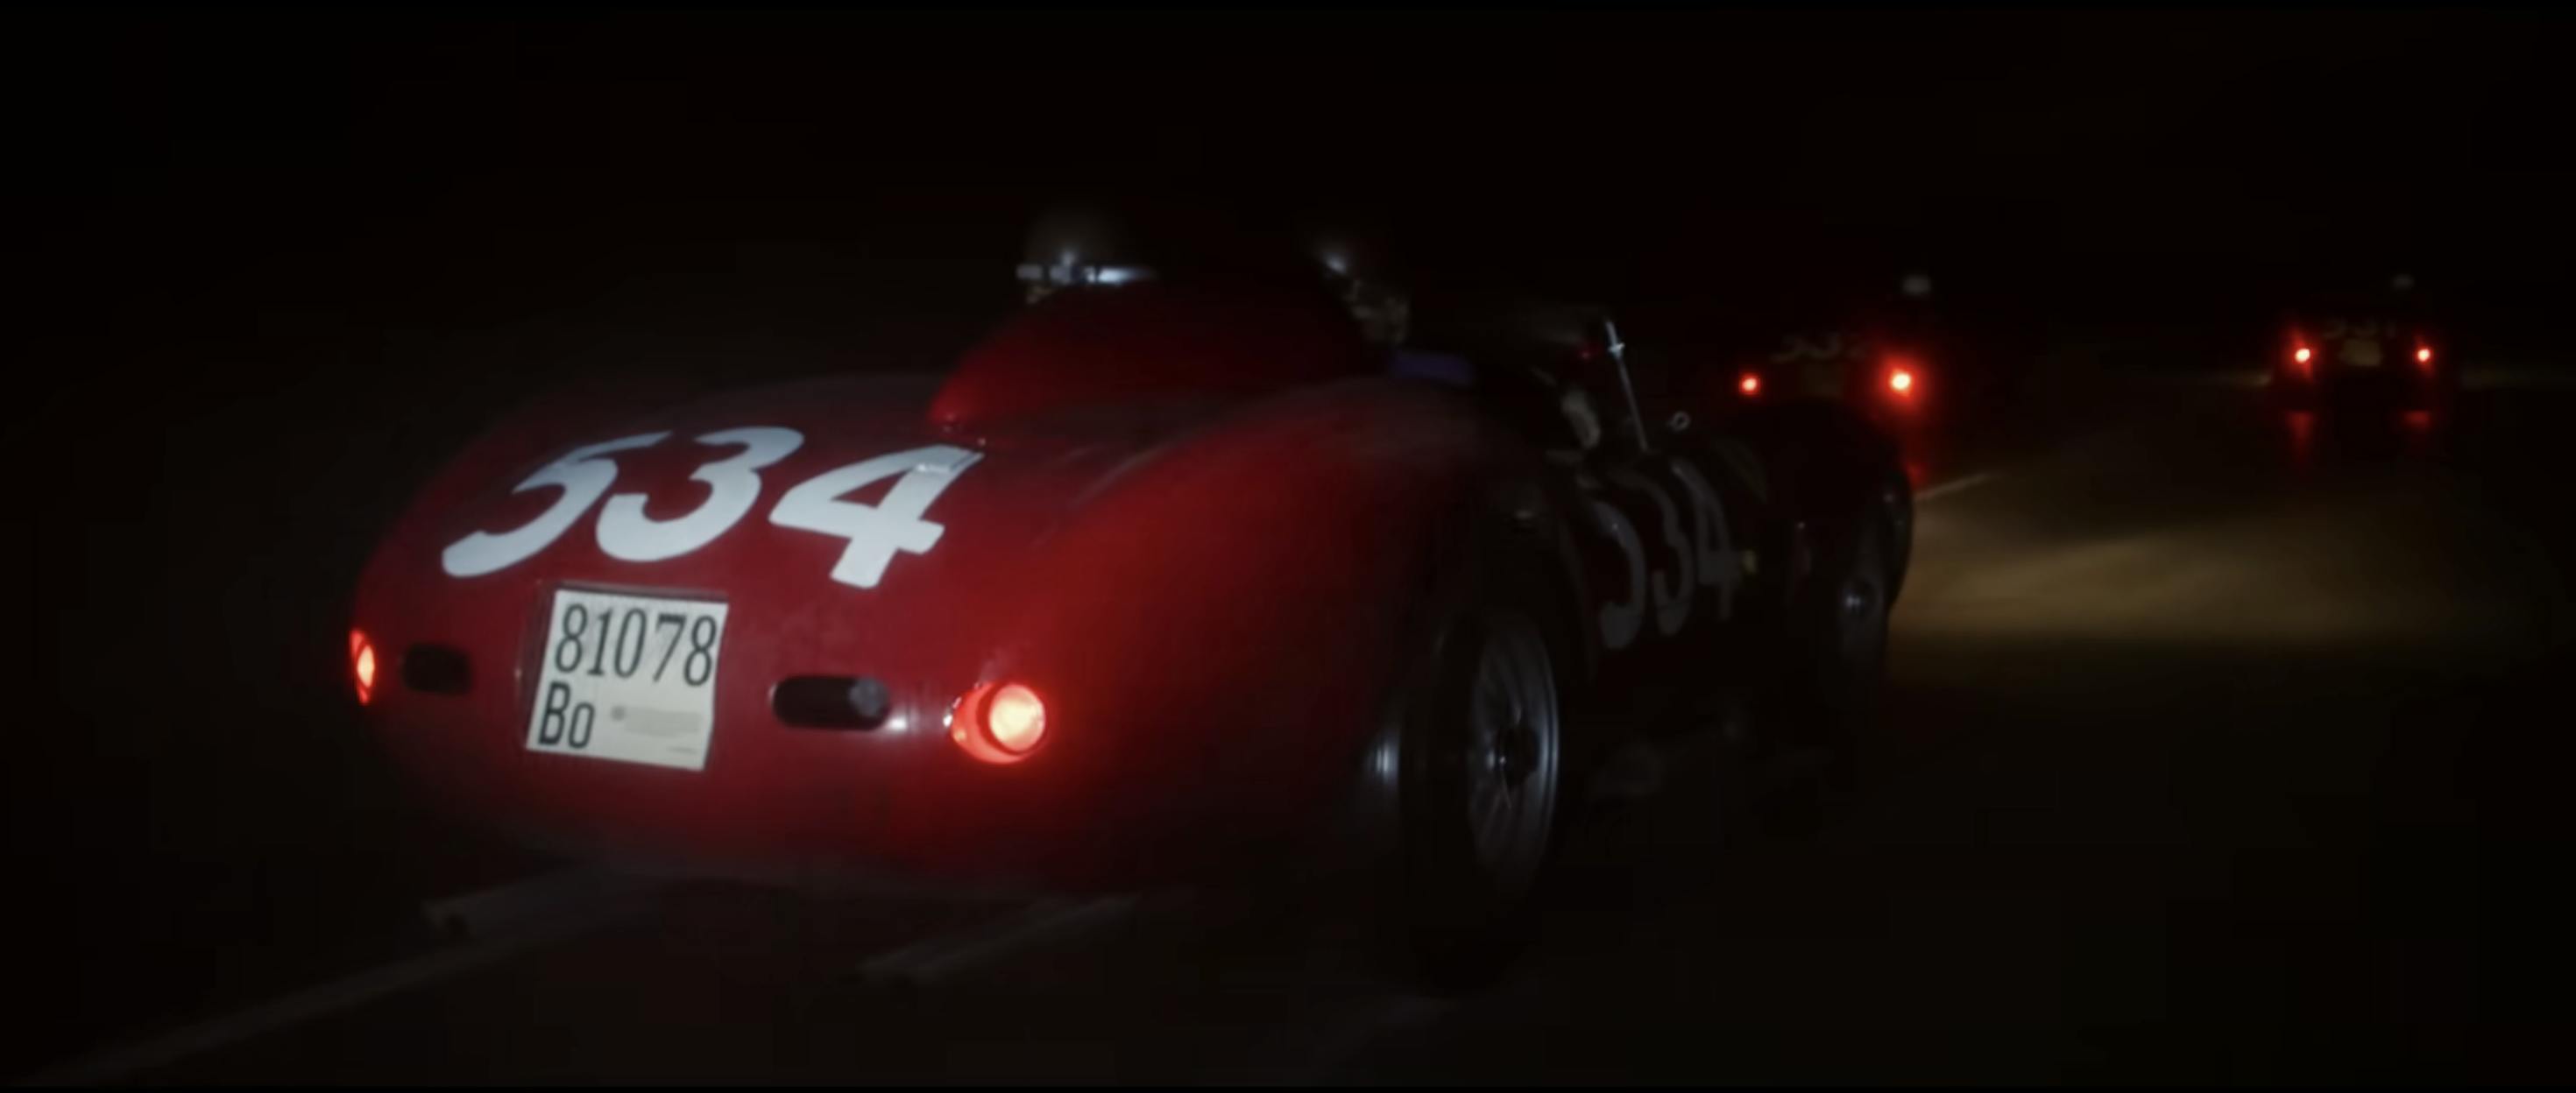 Ferrari film racing action still night